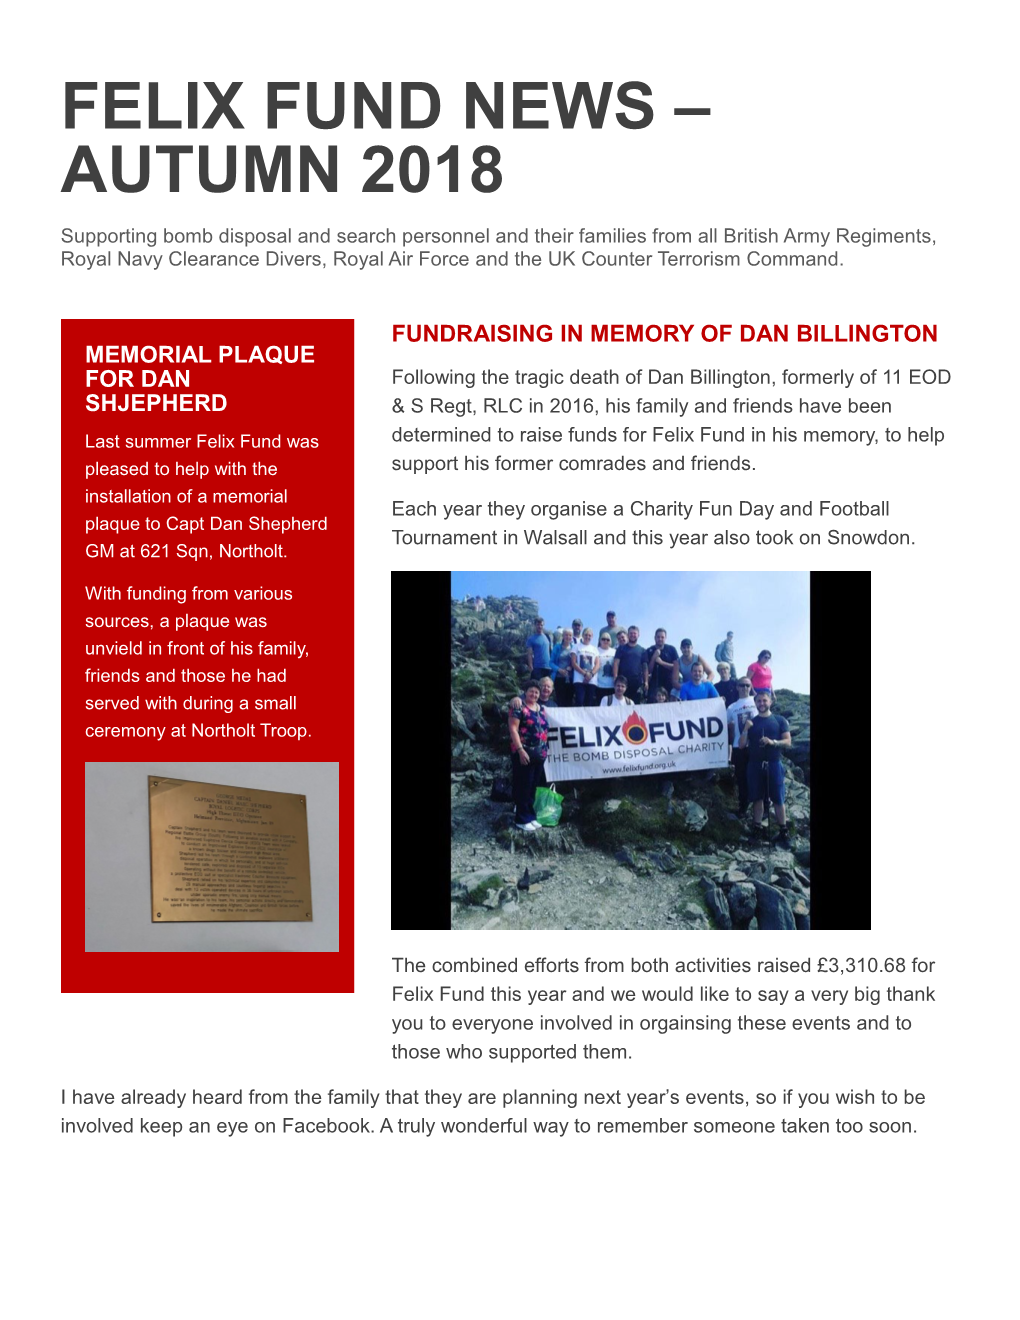 Felix Fund News – Autumn 2018